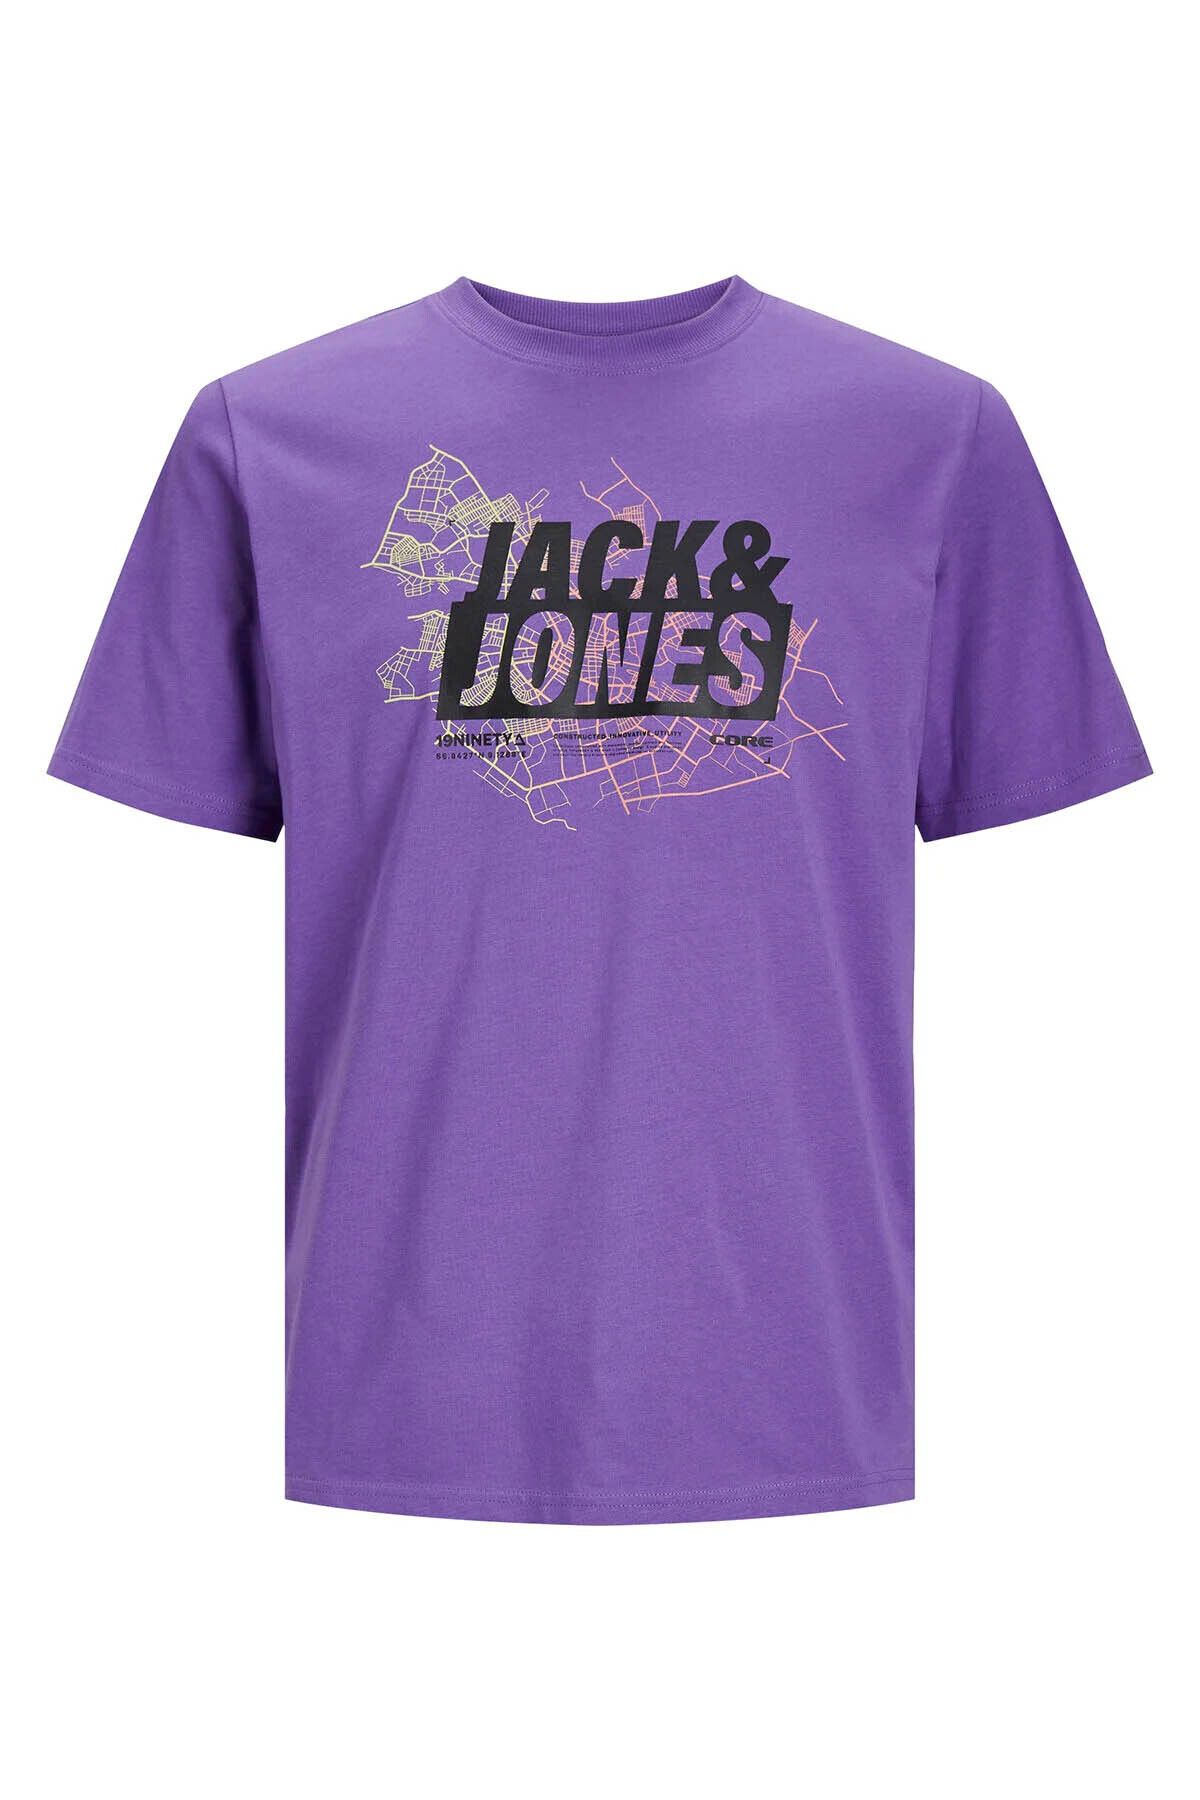 Jack & Jones Erkek T-shirt Mor 12252376